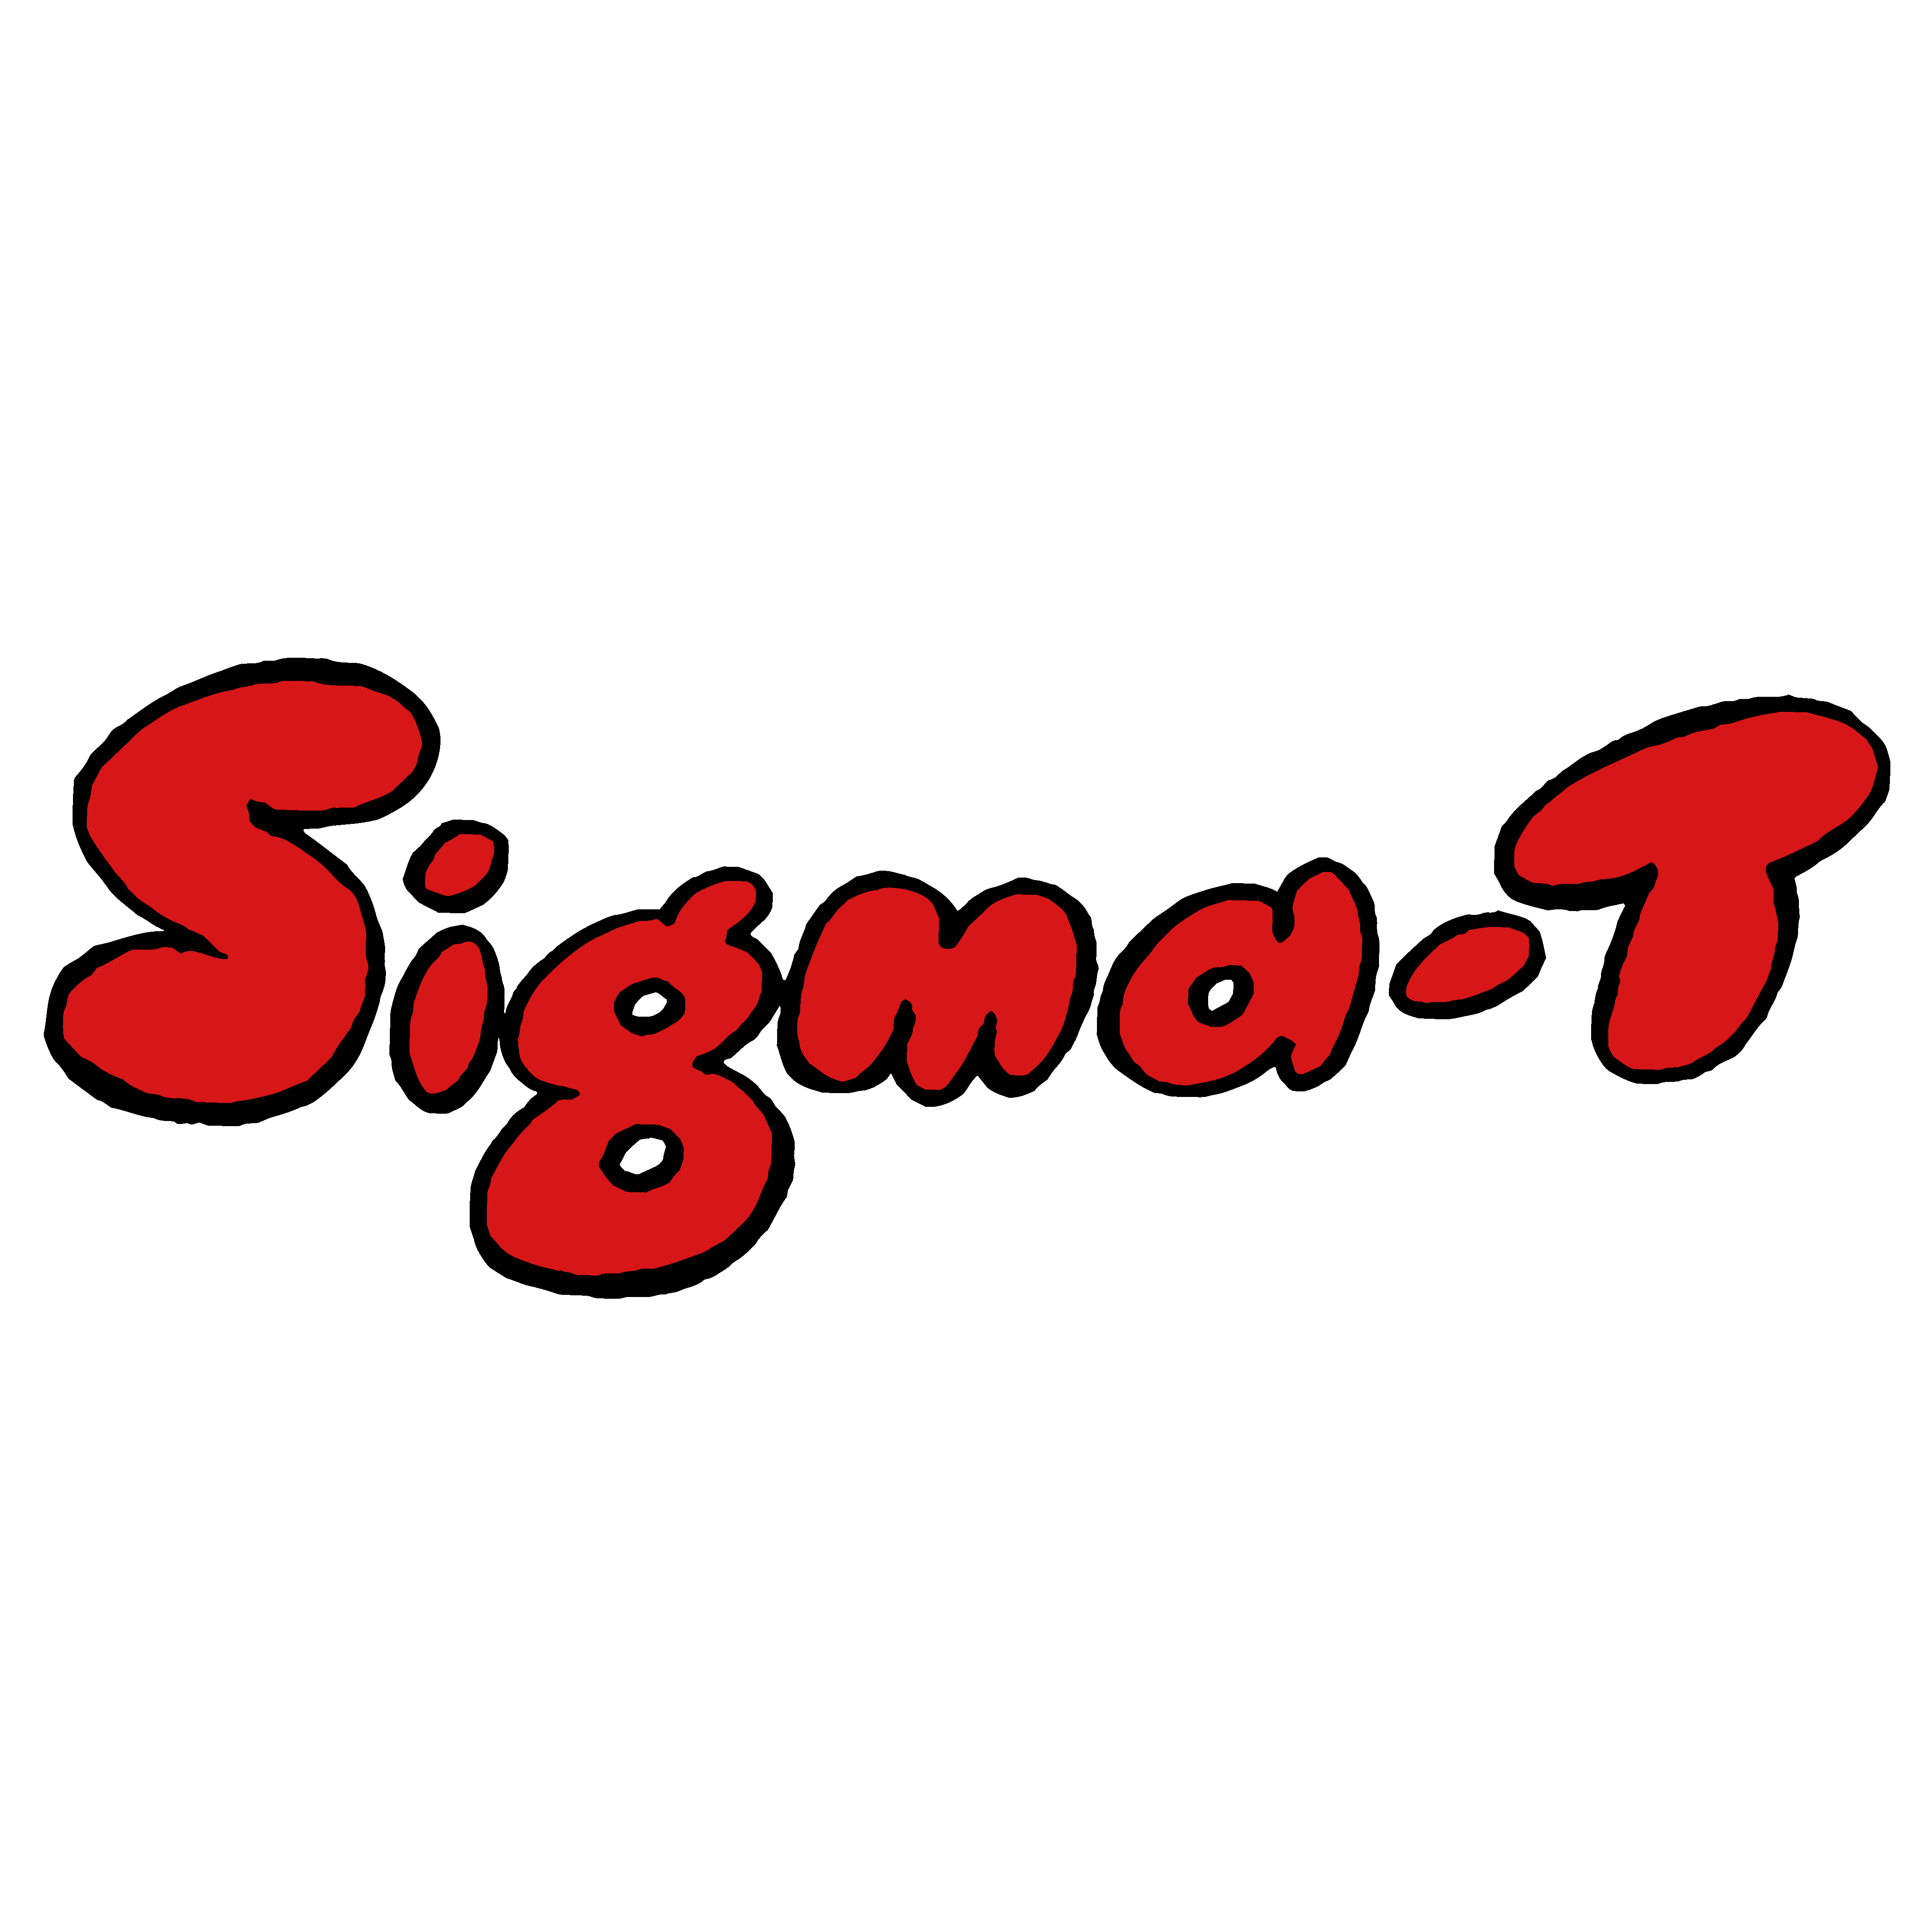 Sigma-T